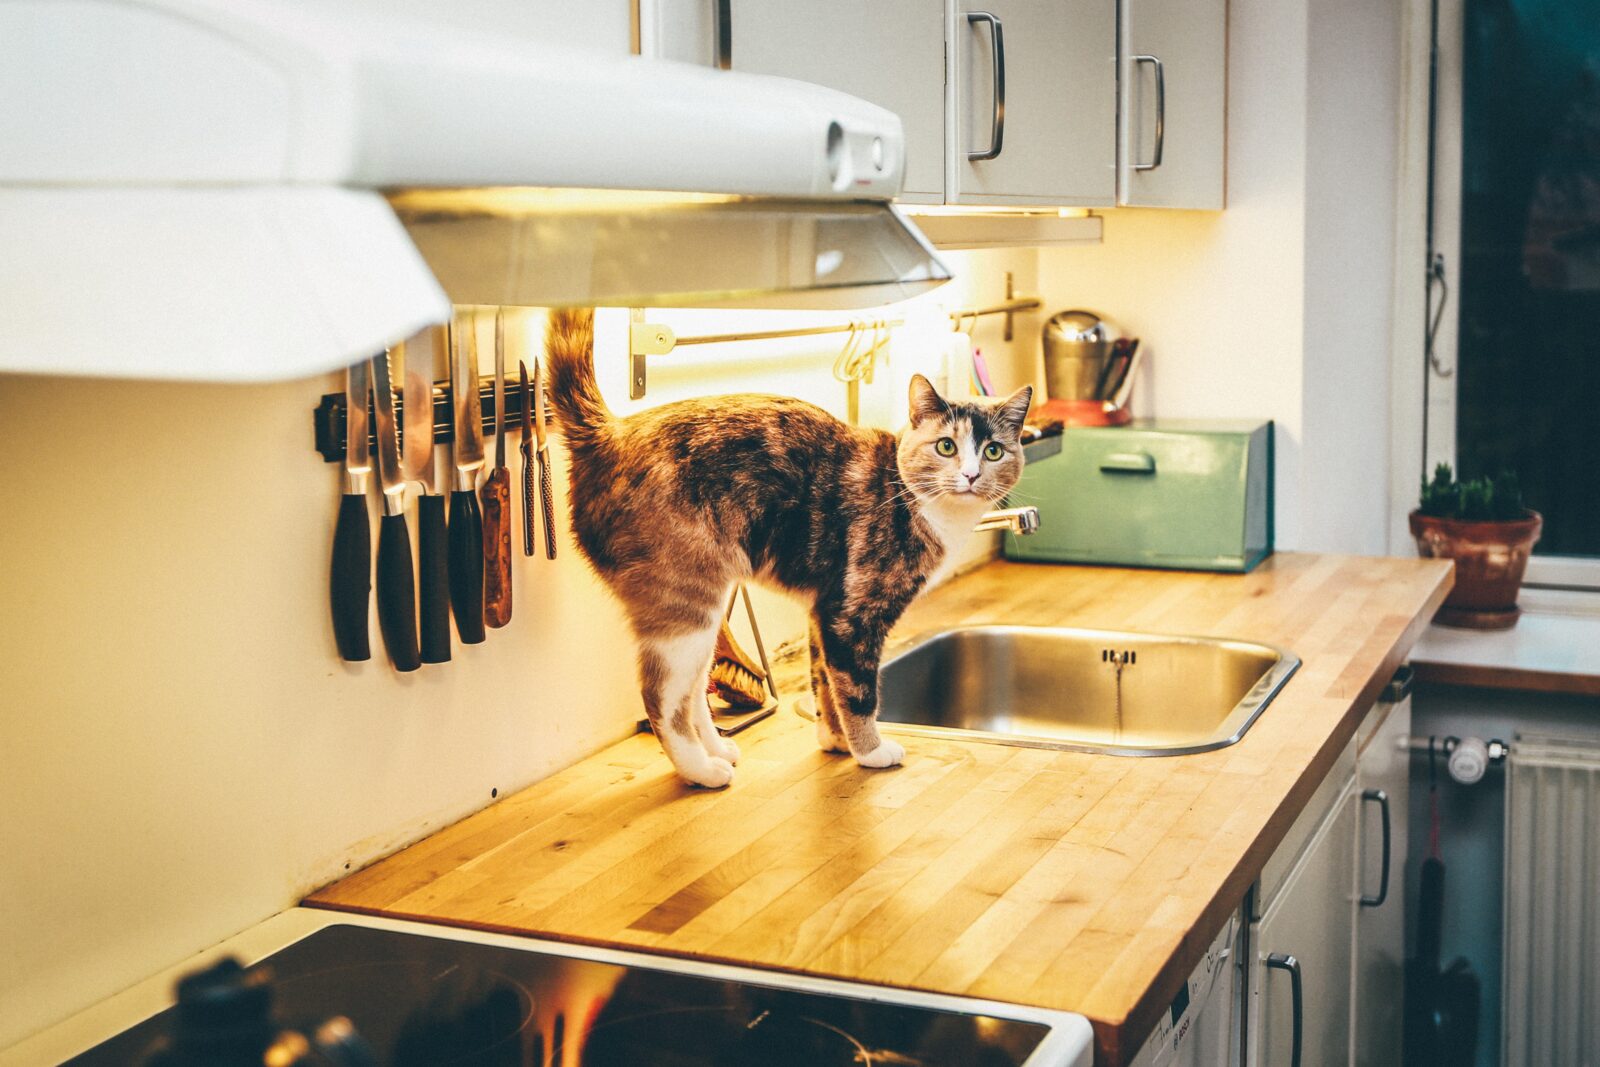 Cat on kitchen worktop